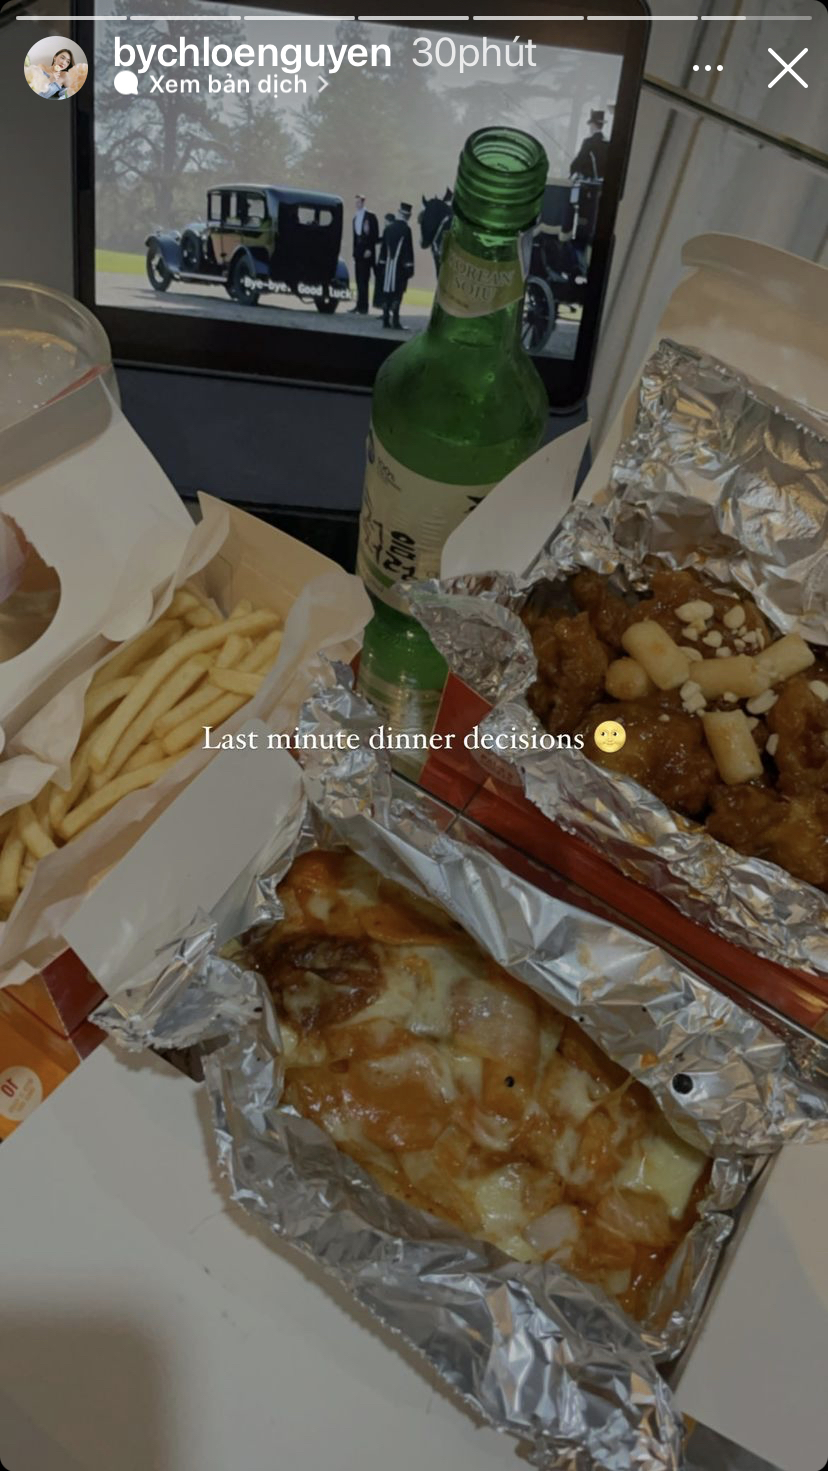 Bữa tối quyết định vào phút chót của beauty blogger Chloe Nguyễn khá hấp dẫn với khoai tây chiên, bánh gạo pho mai và gà rán Hàn Quốc.